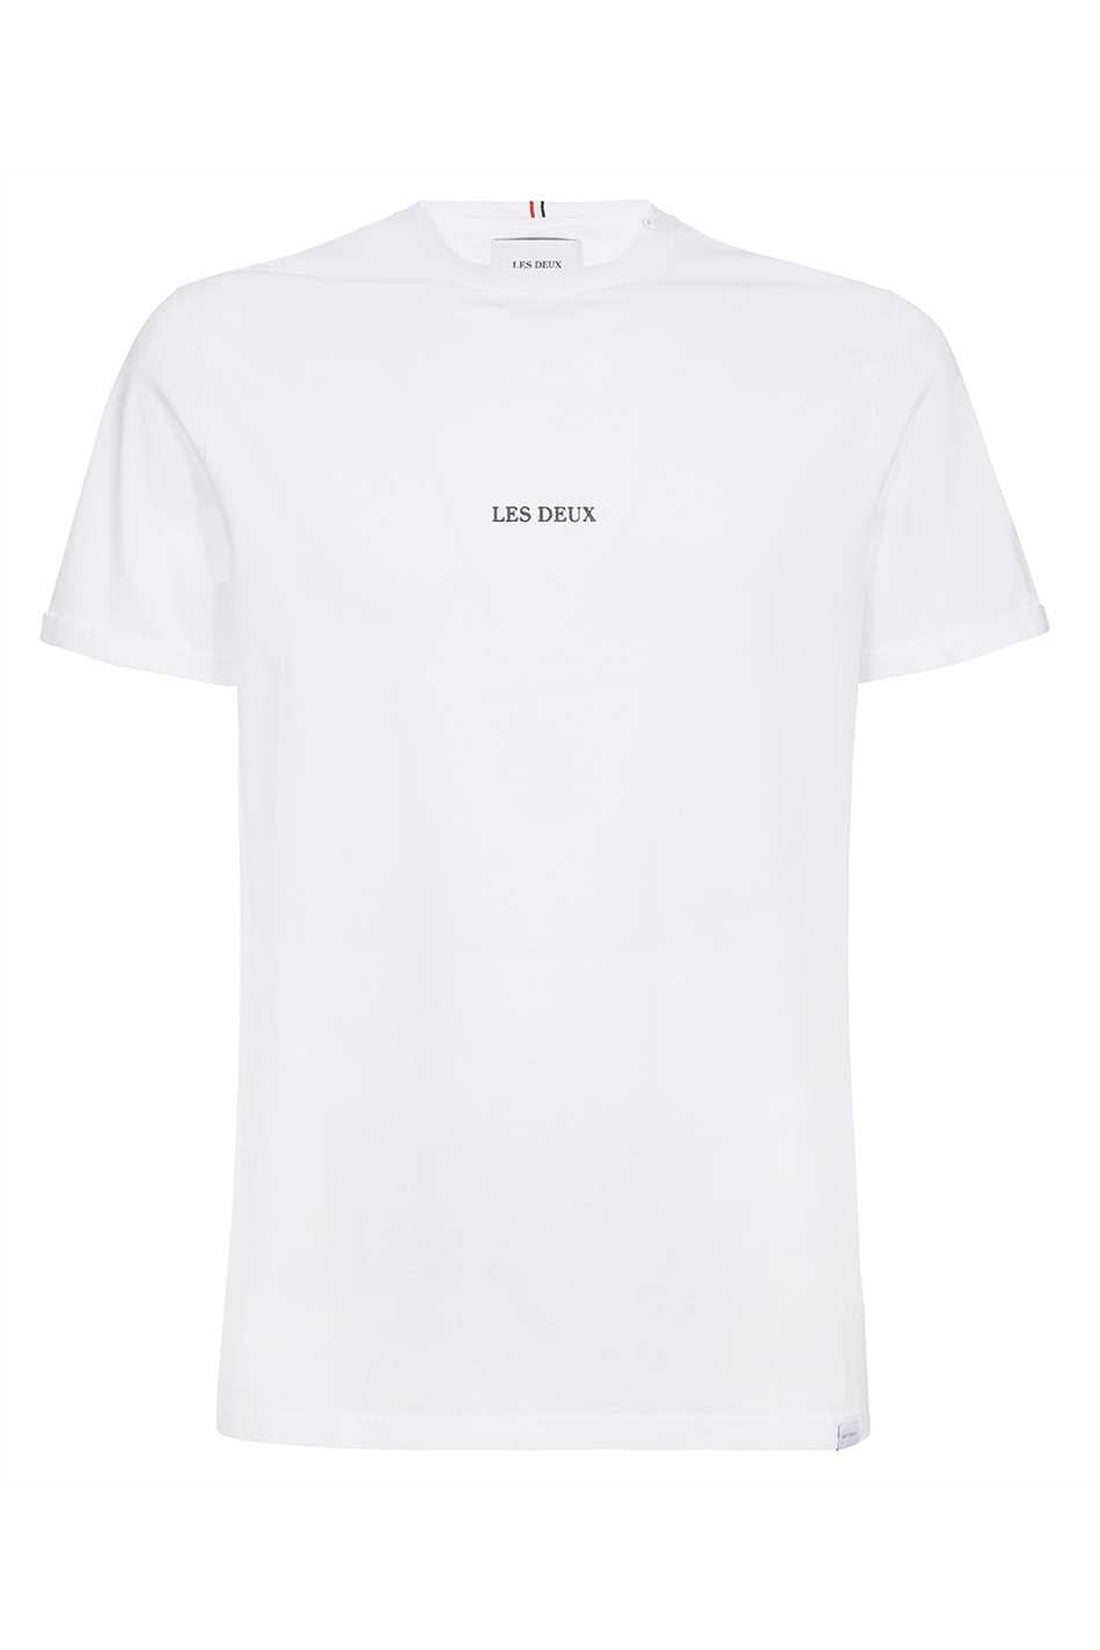 Les Deux-OUTLET-SALE-Lens logo cotton t-shirt-ARCHIVIST